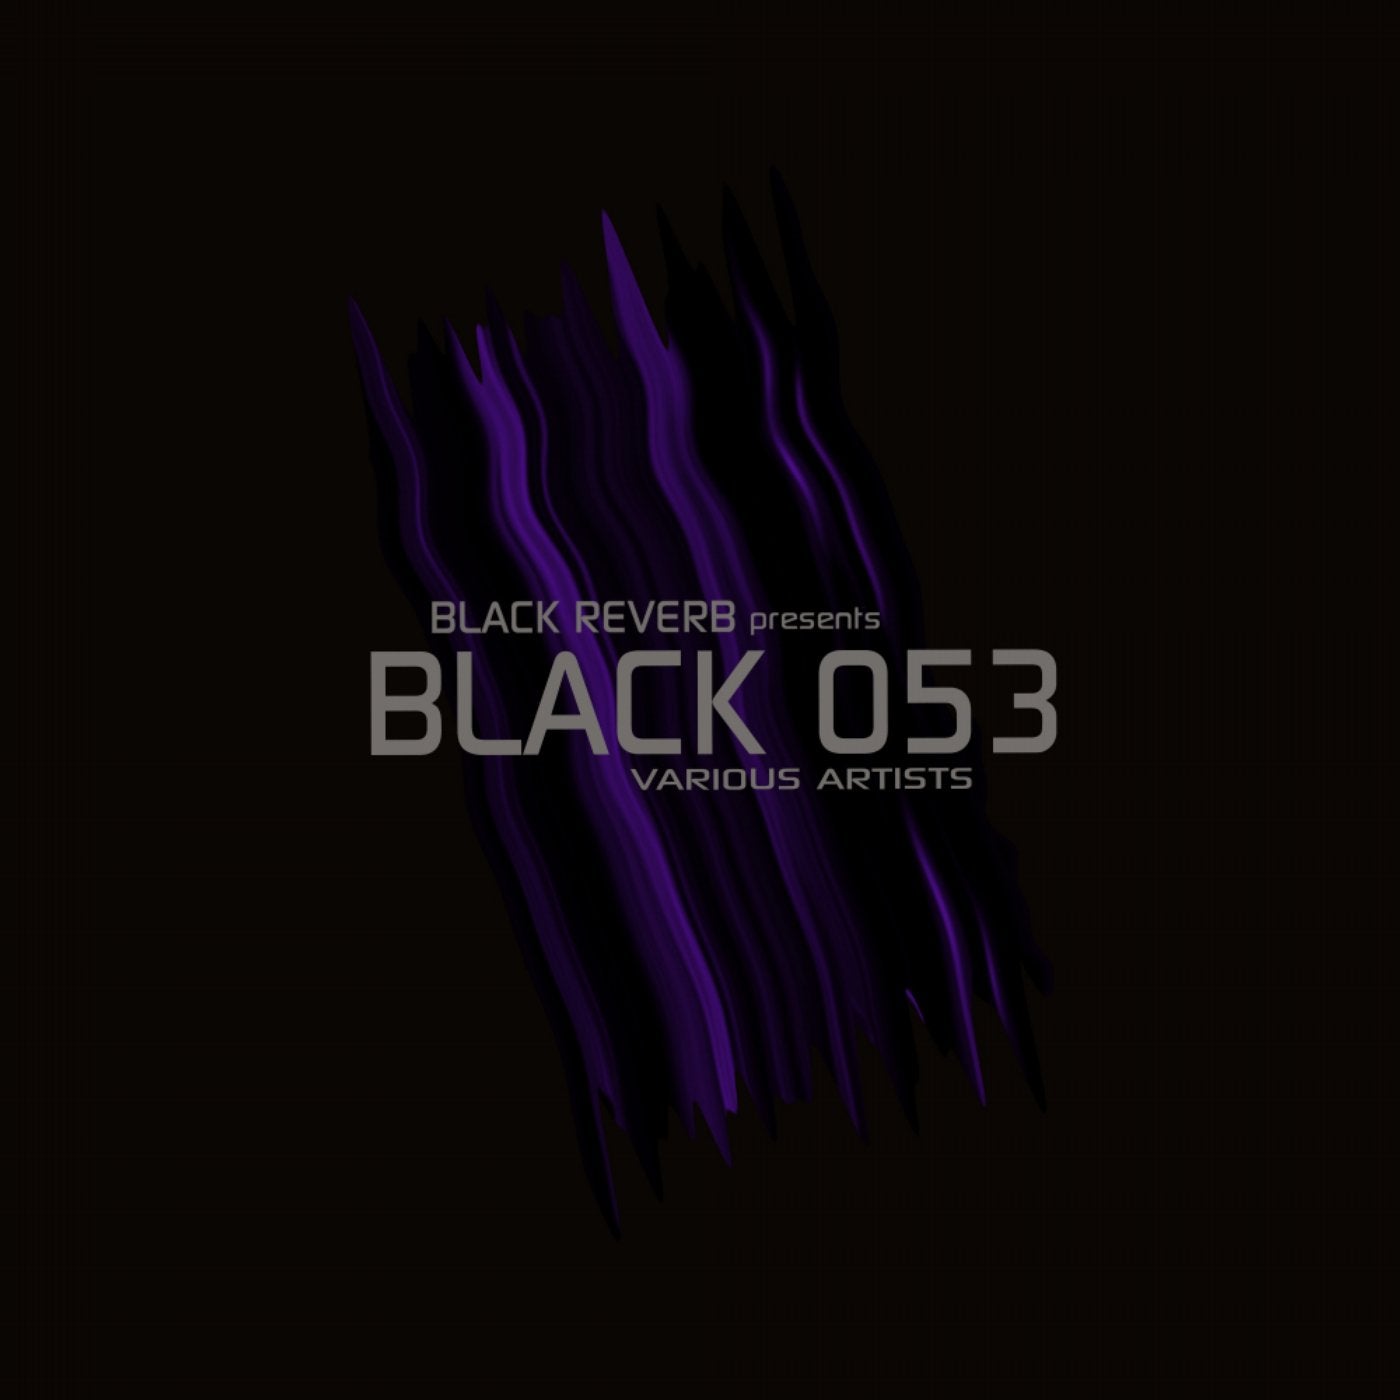 Black 053